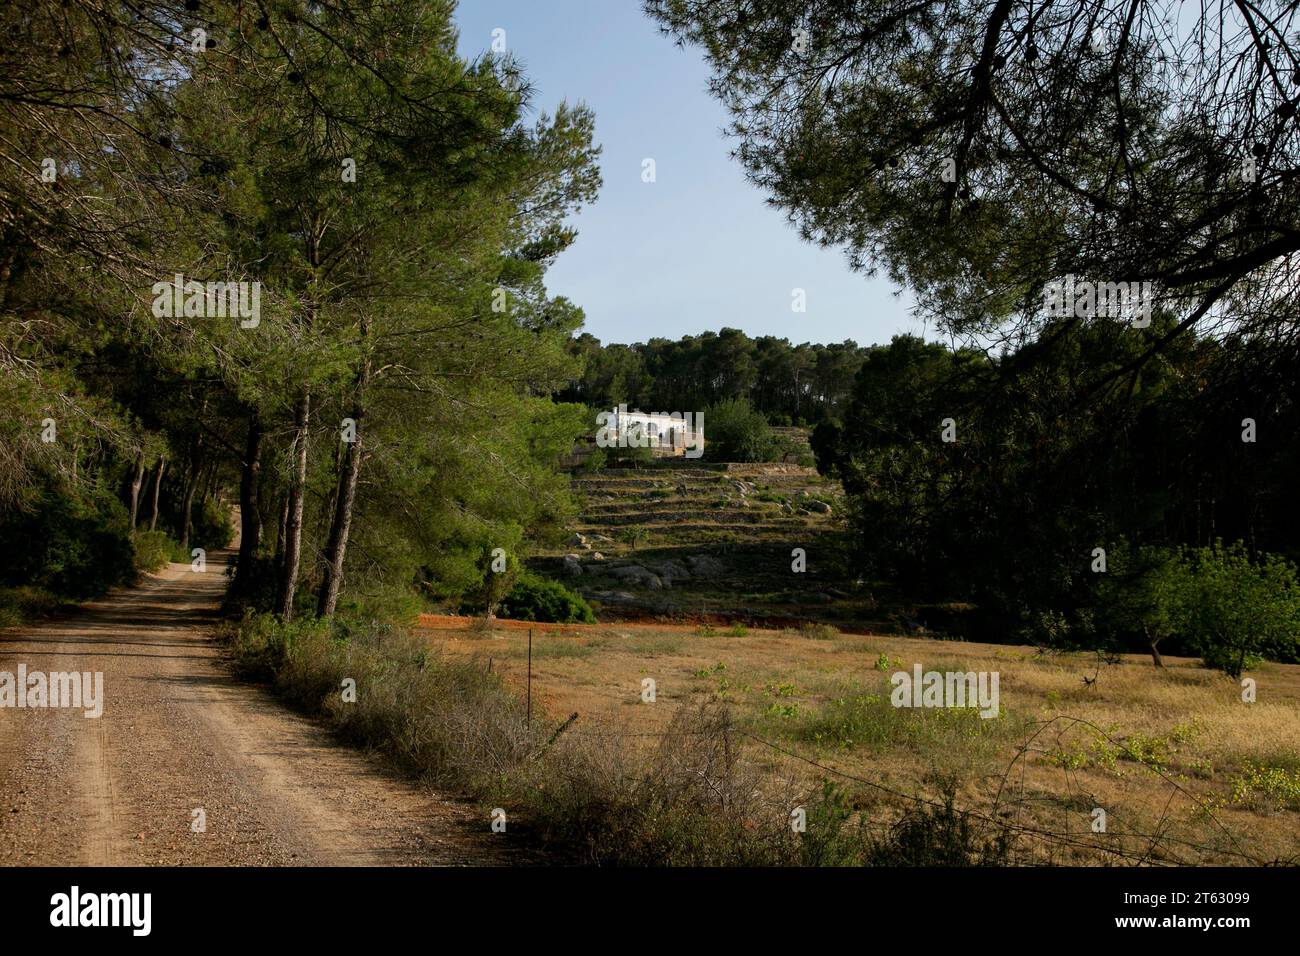 Casa di campagna bianca sull'isola di Ibiza circondata dalla natura nella parte settentrionale dell'isola. Foto Stock